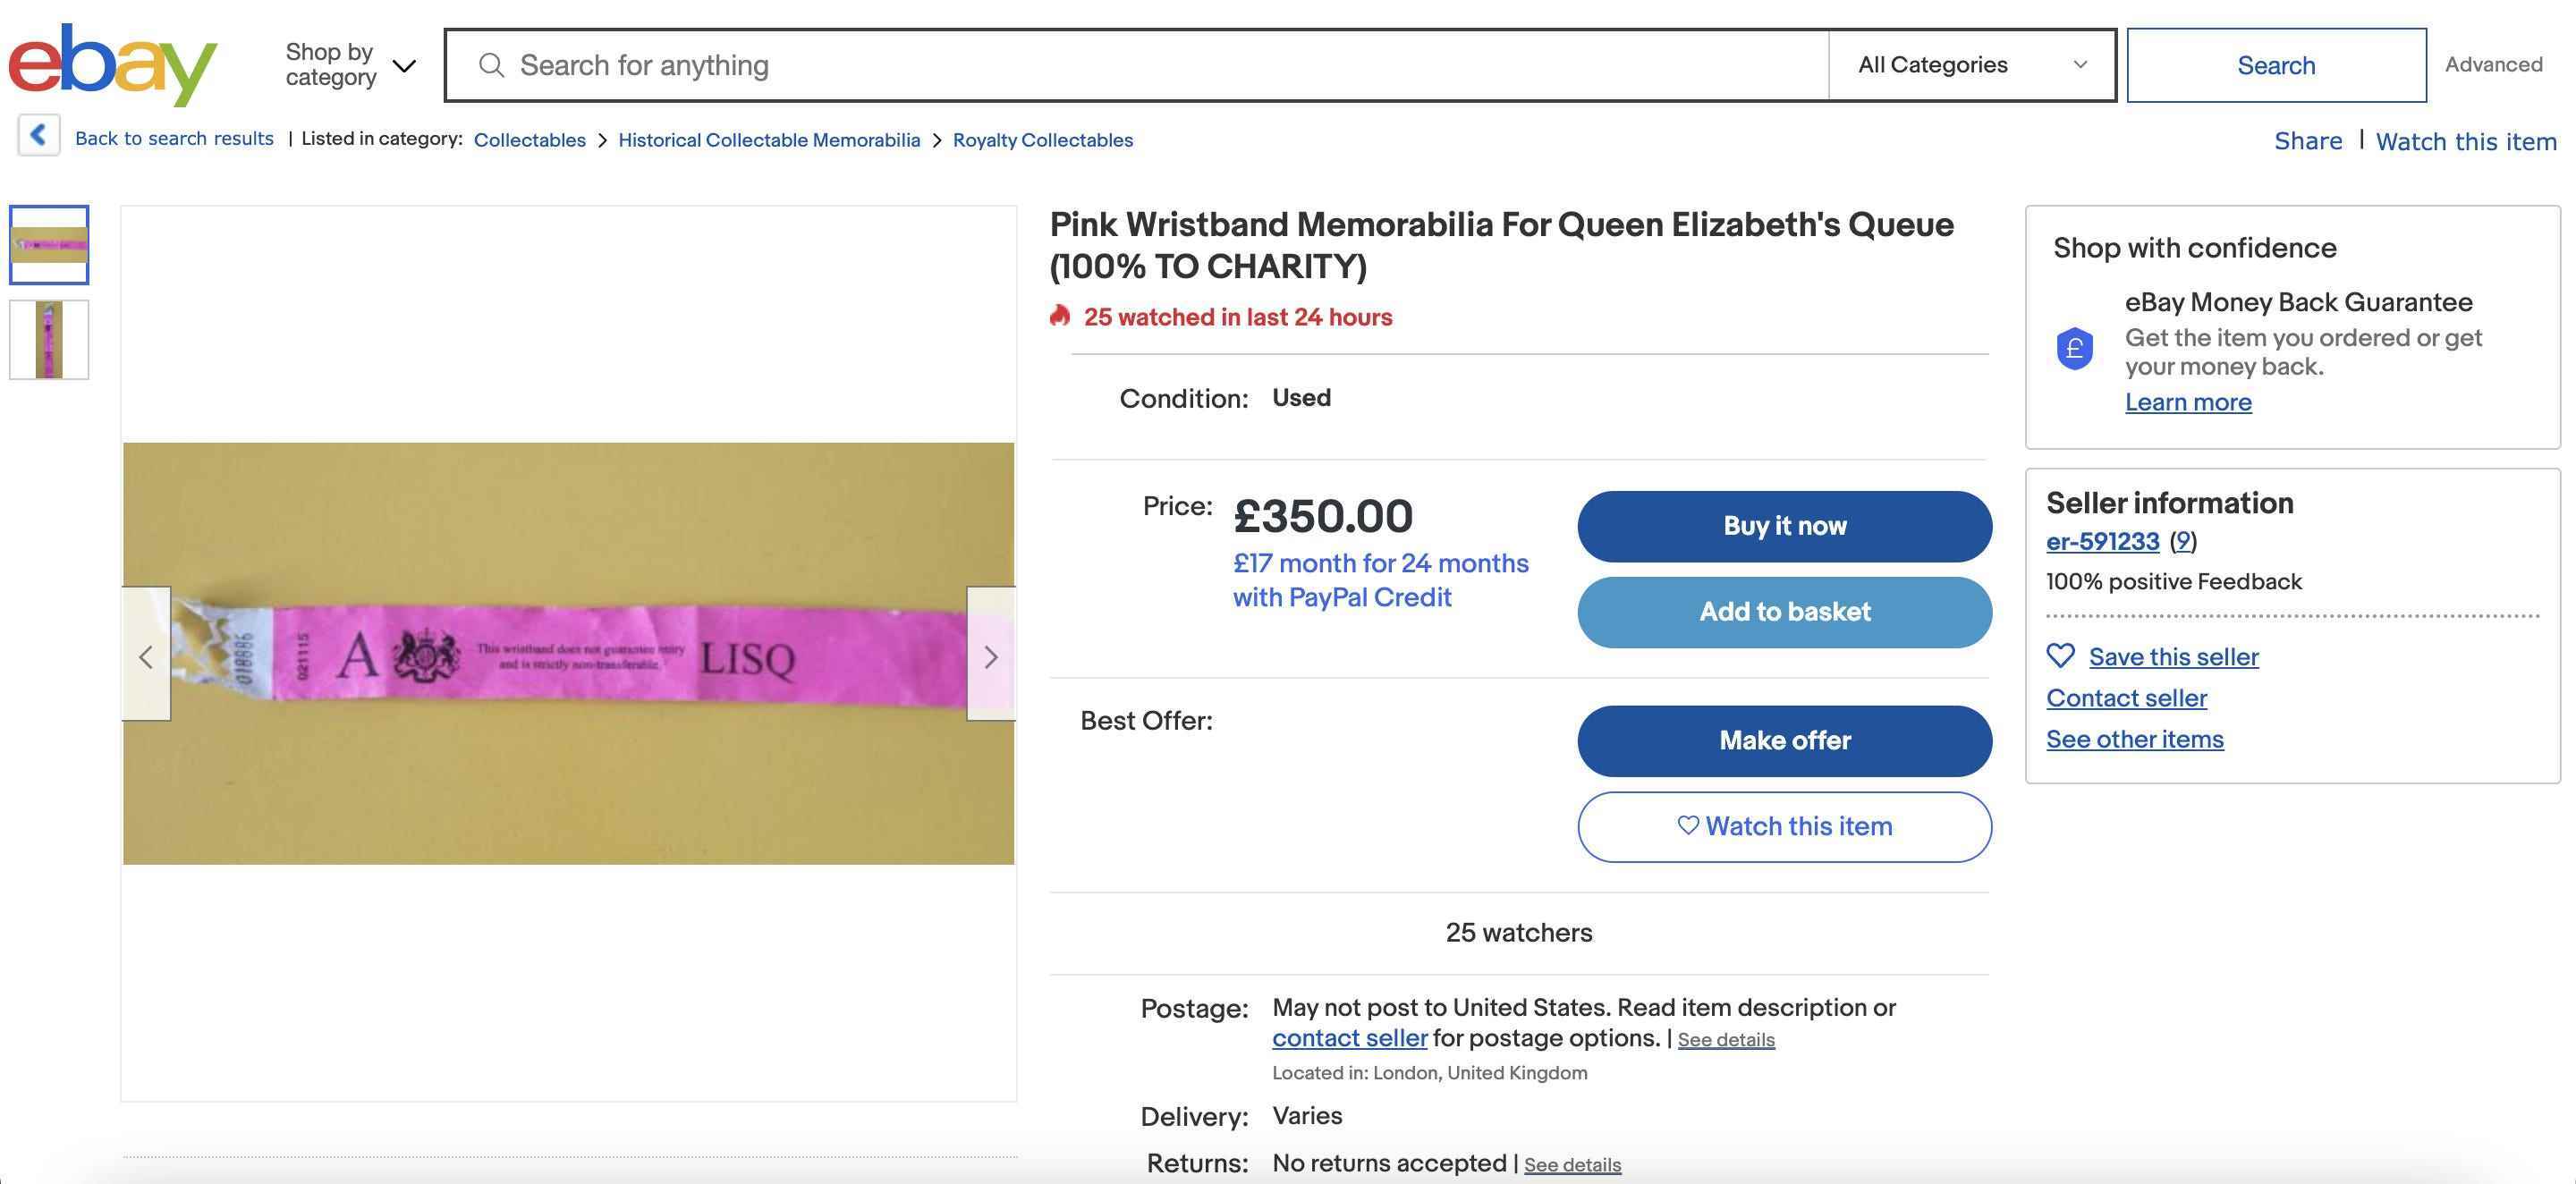 Ein Screenshot eines eBay-Angebots für ein rosa Armband